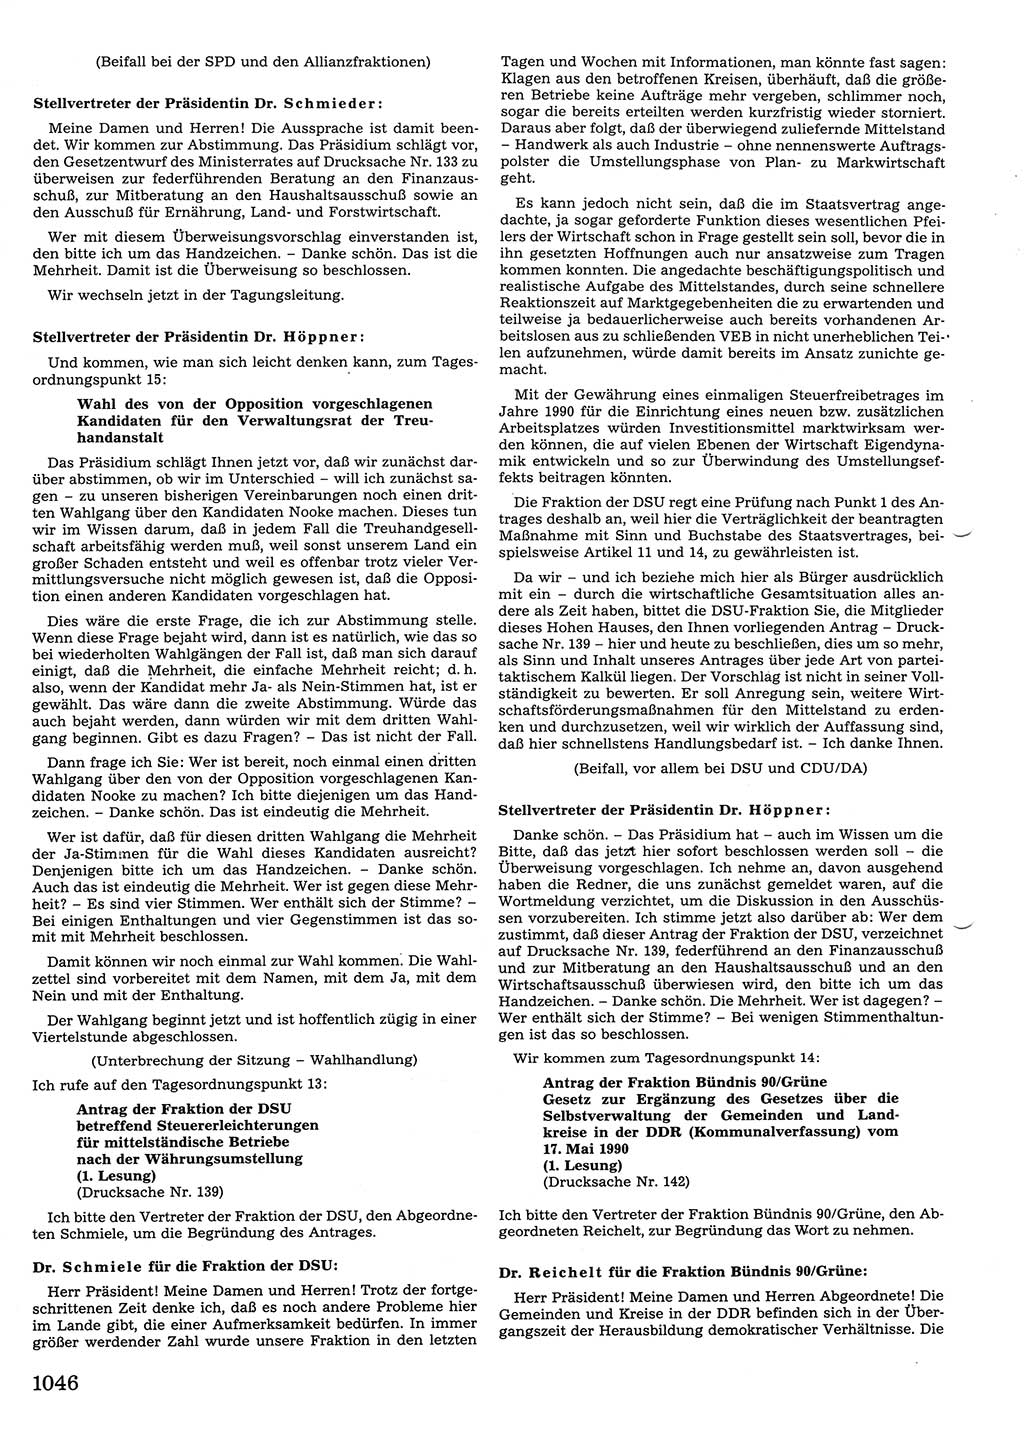 Tagungen der Volkskammer (VK) der Deutschen Demokratischen Republik (DDR), 10. Wahlperiode 1990, Seite 1046 (VK. DDR 10. WP. 1990, Prot. Tg. 1-38, 5.4.-2.10.1990, S. 1046)